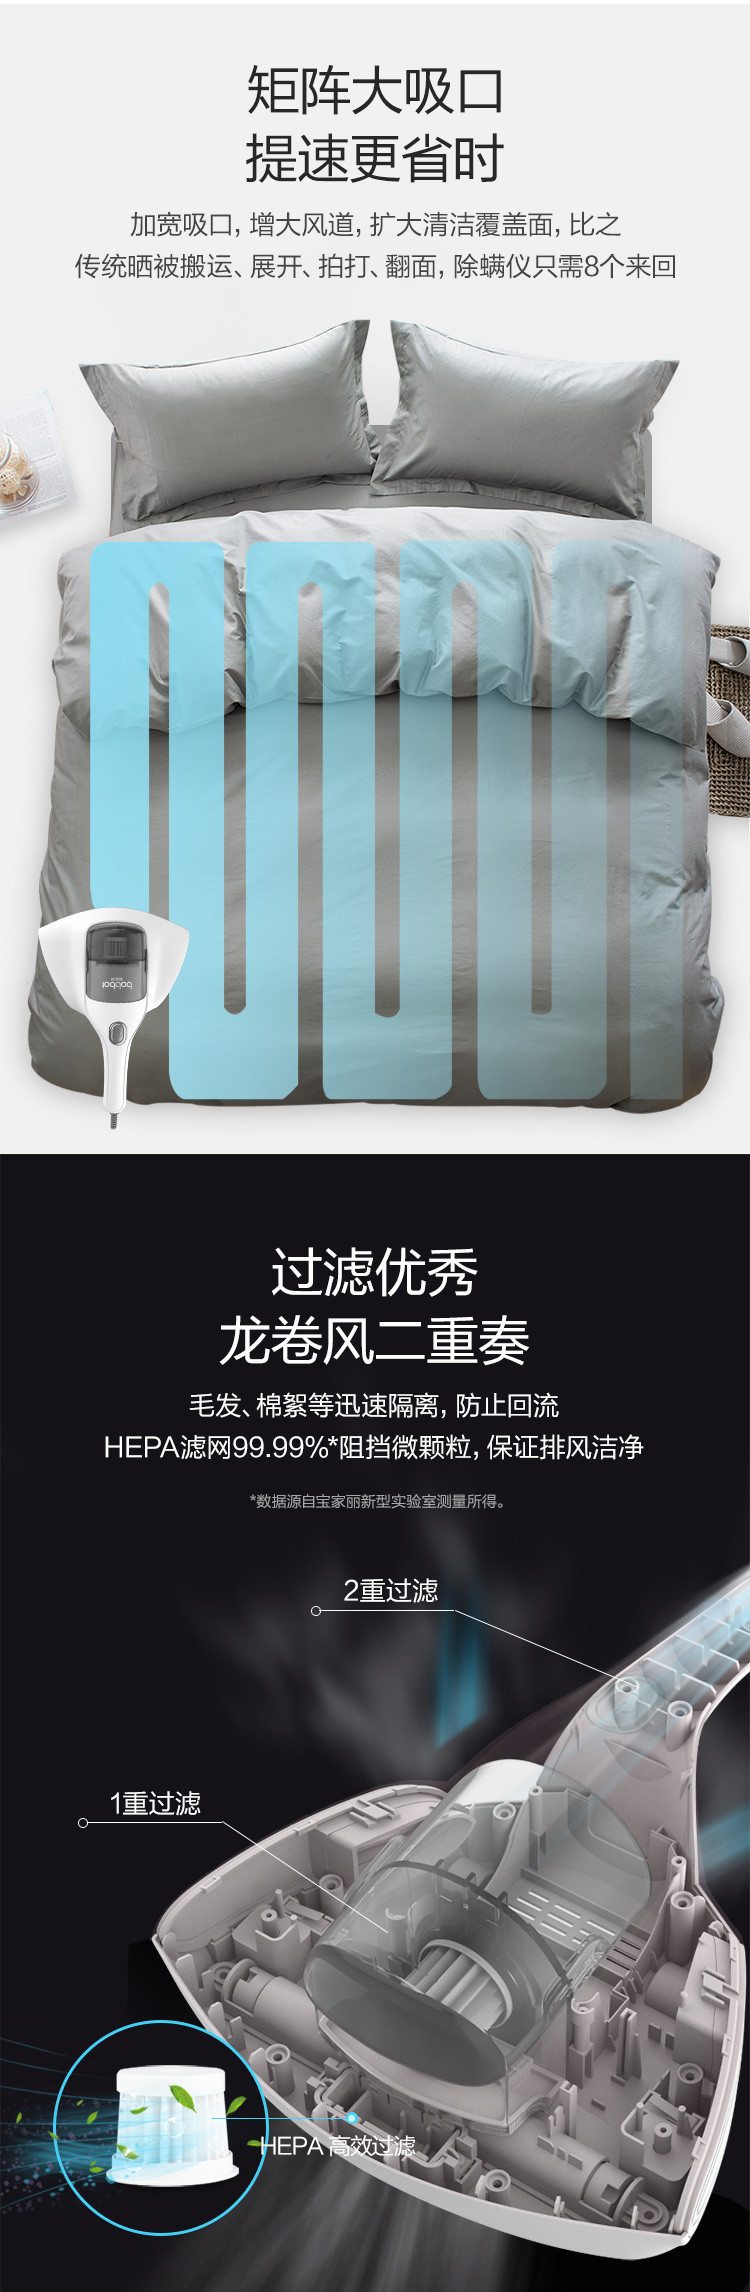 宝家丽 家用床上吸尘器紫外线杀菌机小型热敷床铺除螨仪 BD-215